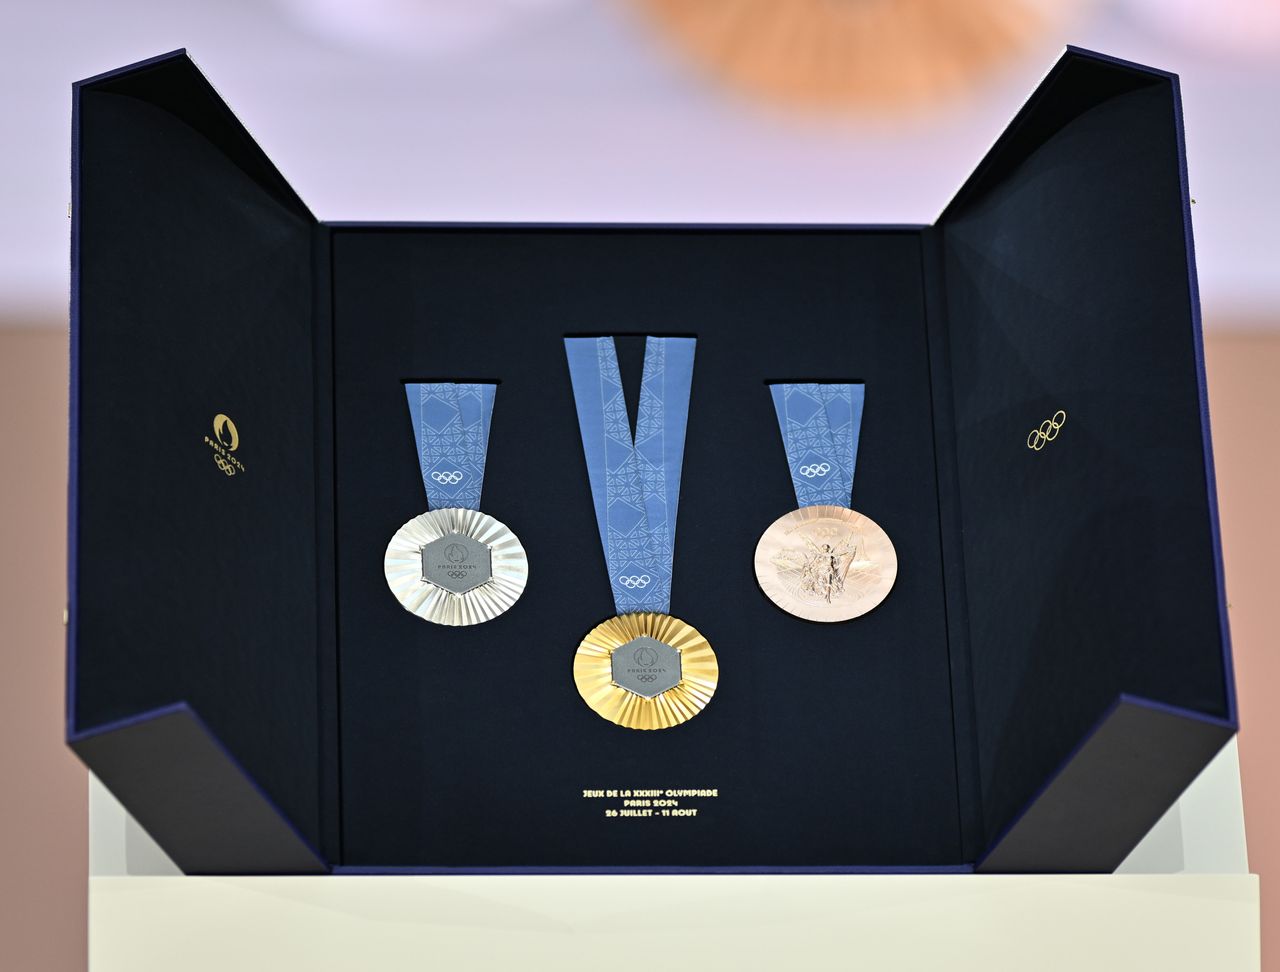 Τα μετάλλια των επερχόμενων Ολυμπιακών και Παραολυμπιακών Αγώνων του Παρισιού 2024 αποκαλύπτονται κατά τη διάρκεια μιας παρουσίασης στα μέσα ενημέρωσης στο Σεν-Ντενί, κοντά στο Παρίσι, Γαλλία, στις 08 Φεβρουαρίου 2024.